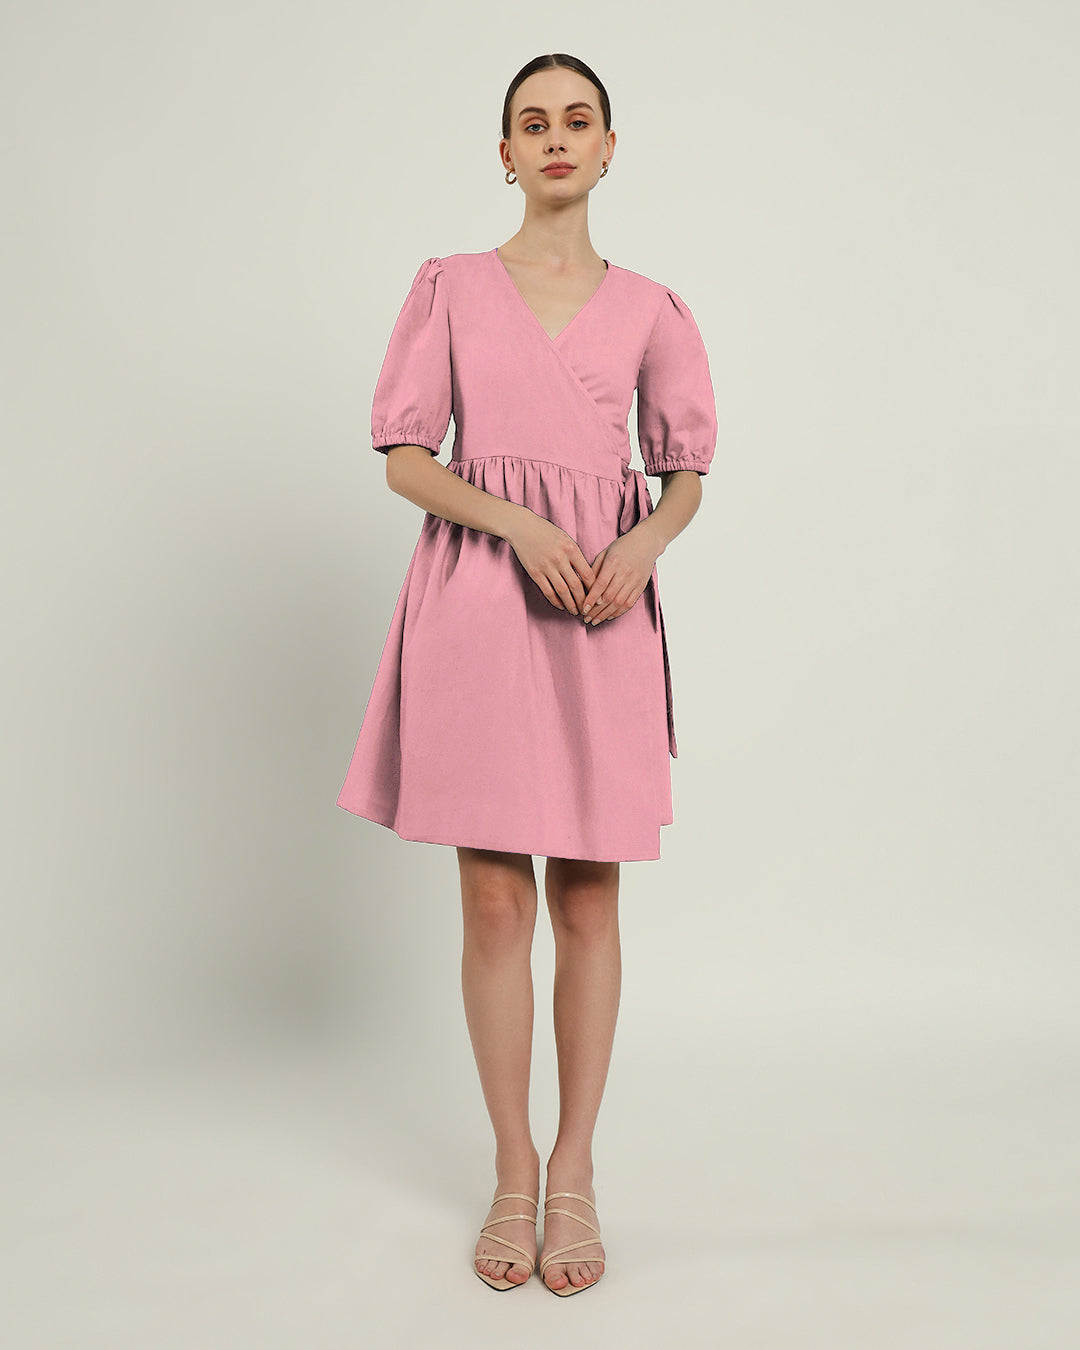 The Inzai Fondant Pink Cotton Dress